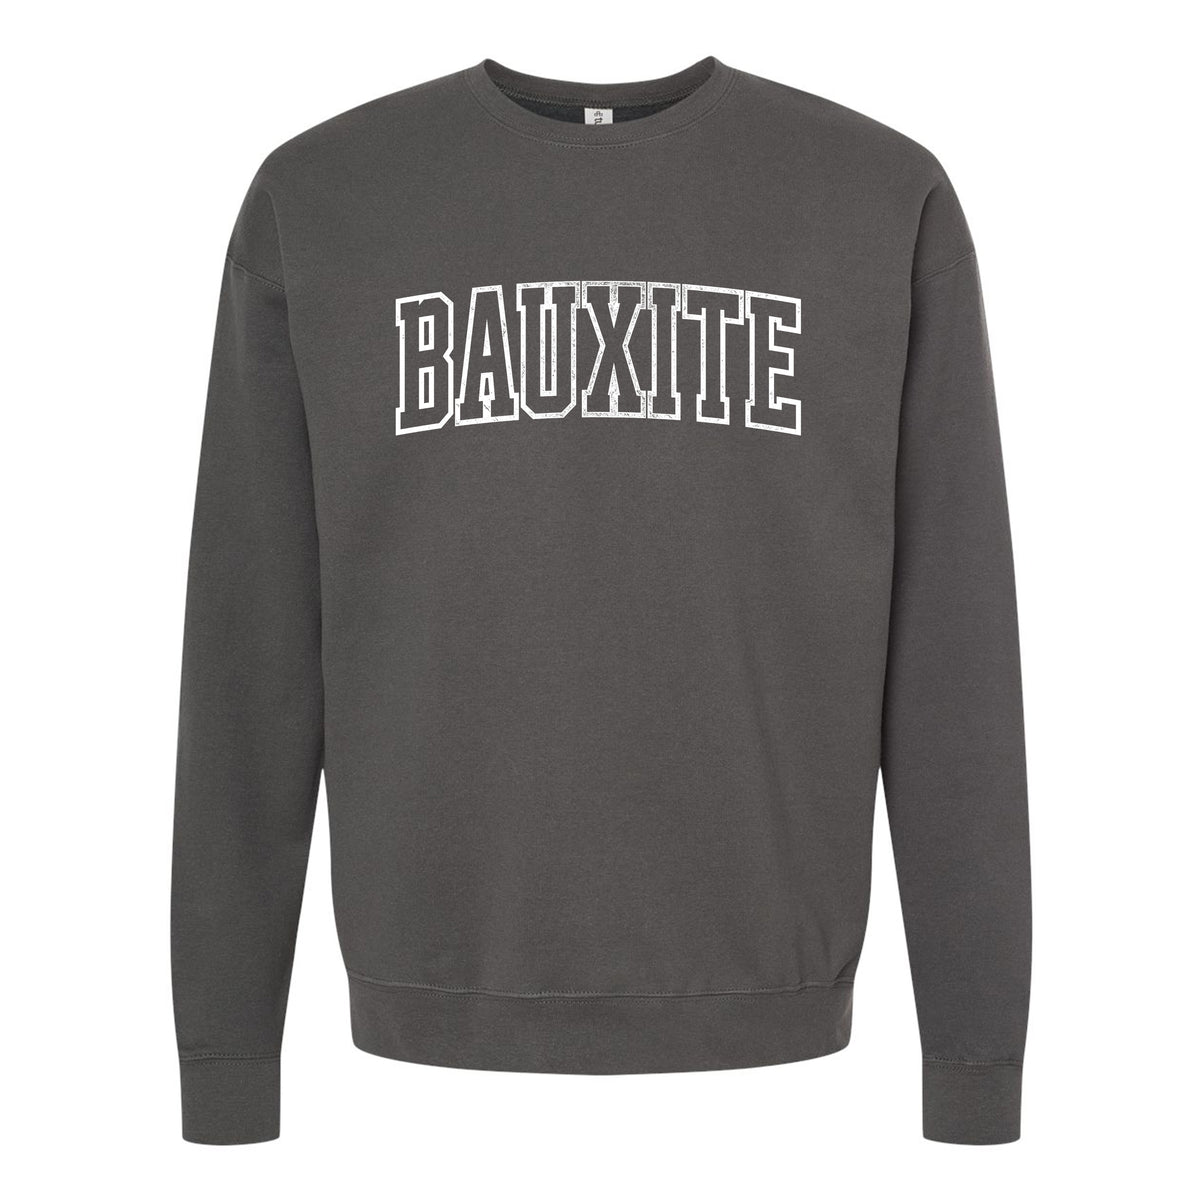 Bauxite Miners BTS Arch Sweatshirt